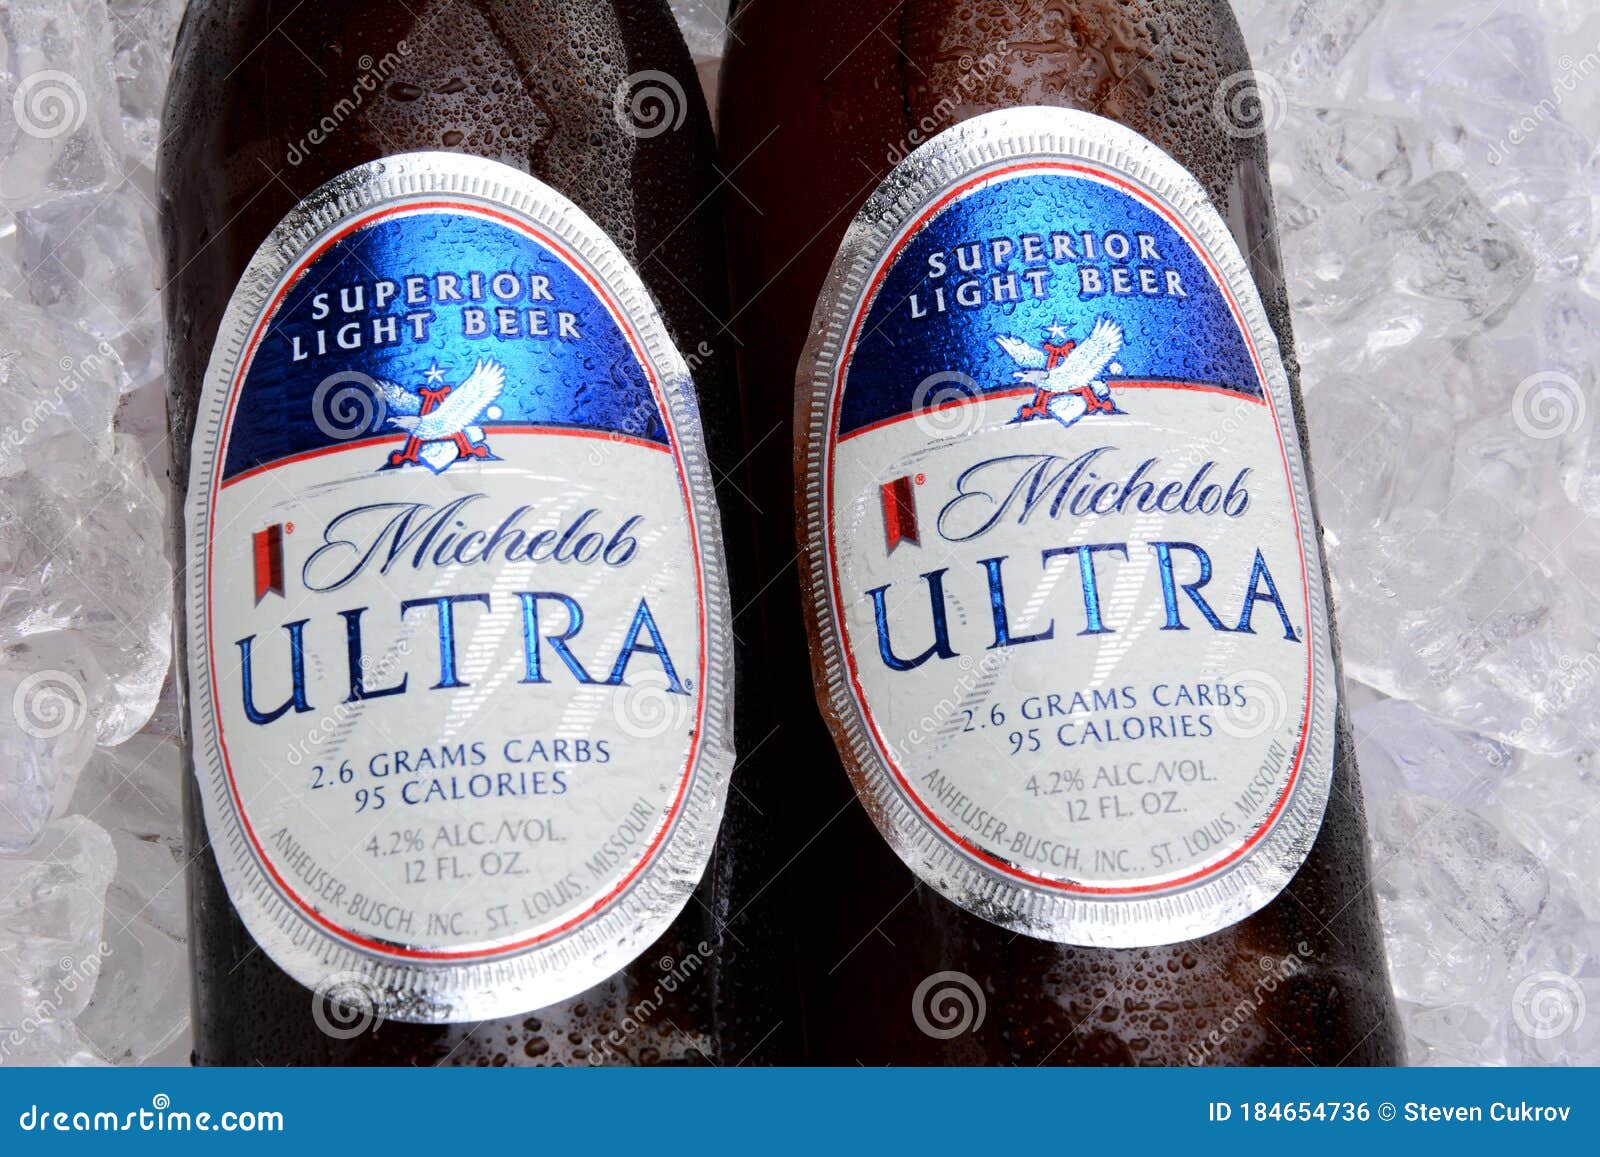 Zwei Flaschen Michelob Ultra Auf Einem Bett Des Eises. Redaktionelles Foto  - Bild von ultra, bett: 184654736